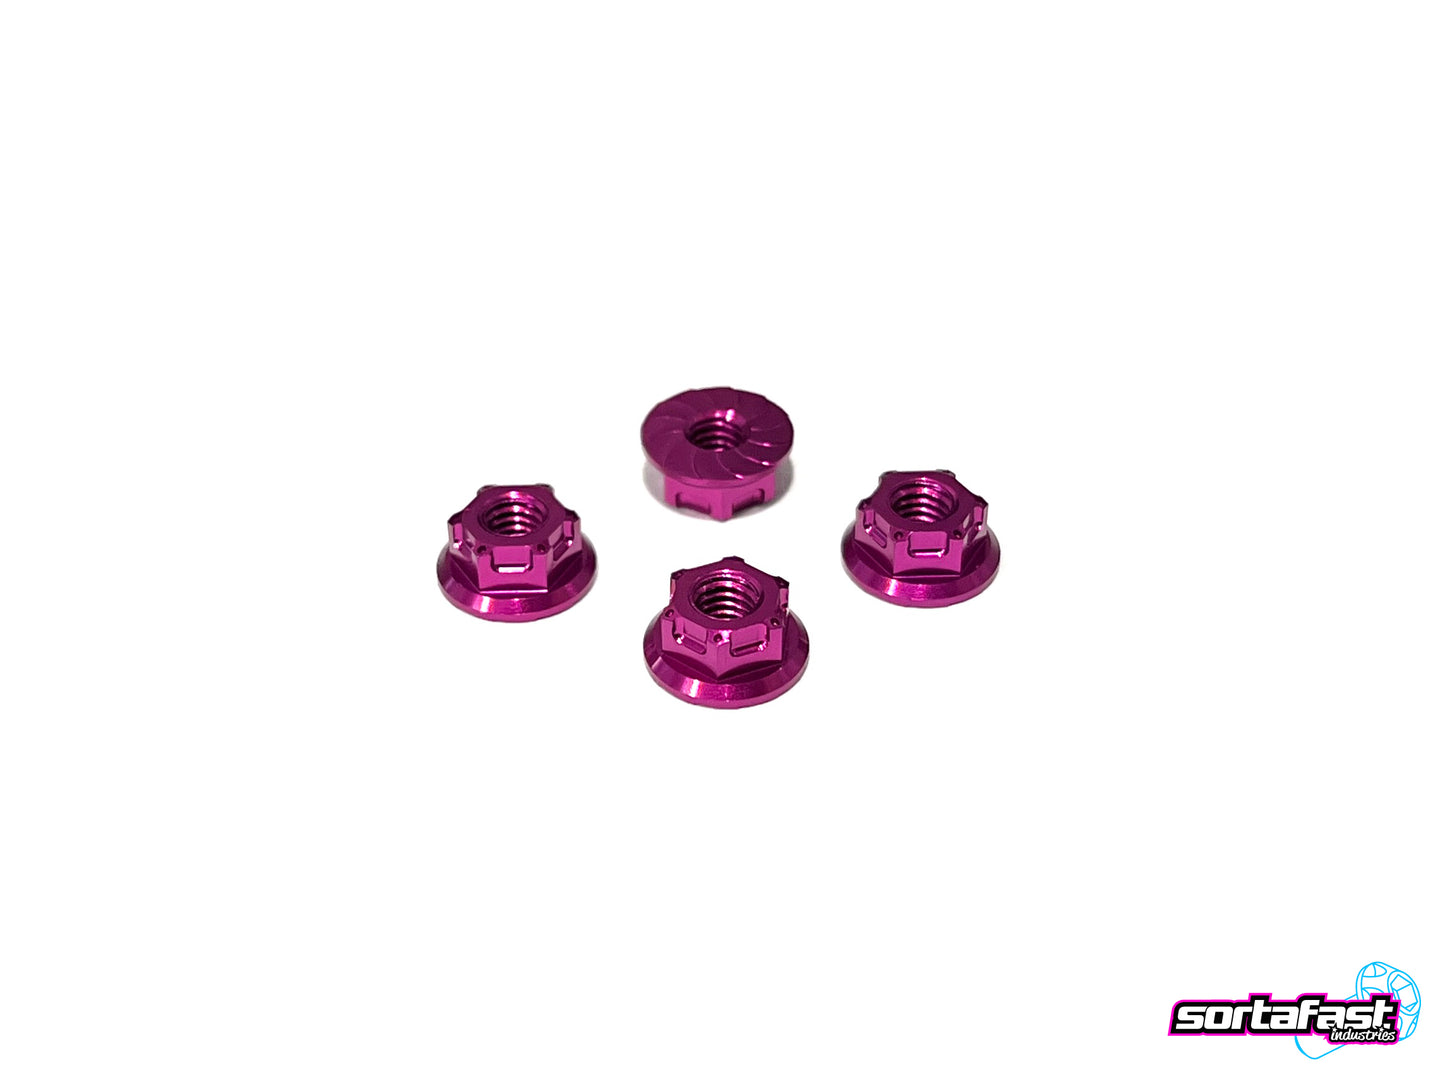 Sortafast Hexcix Aluminum Nuts - M4 flanged - Purple